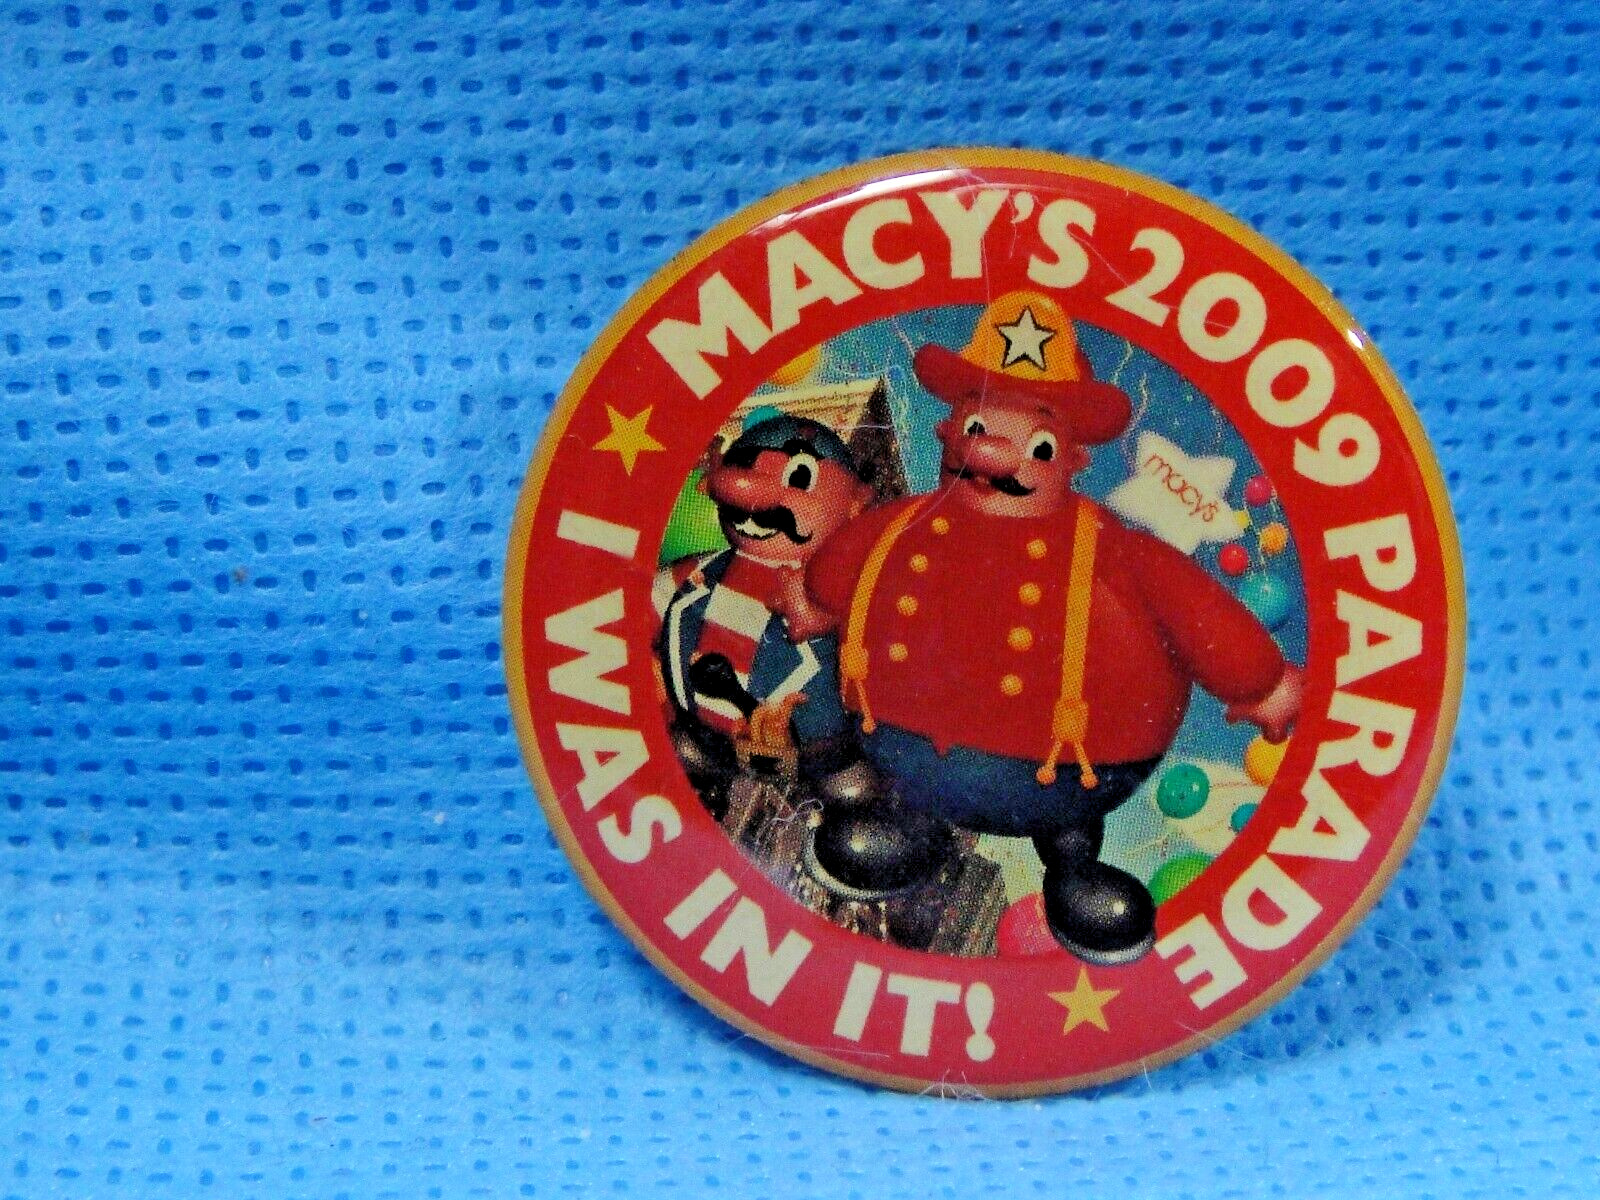 2009 Macys 83rd Annual Thanksgiving Day Parade Souvenir Lapel Pin